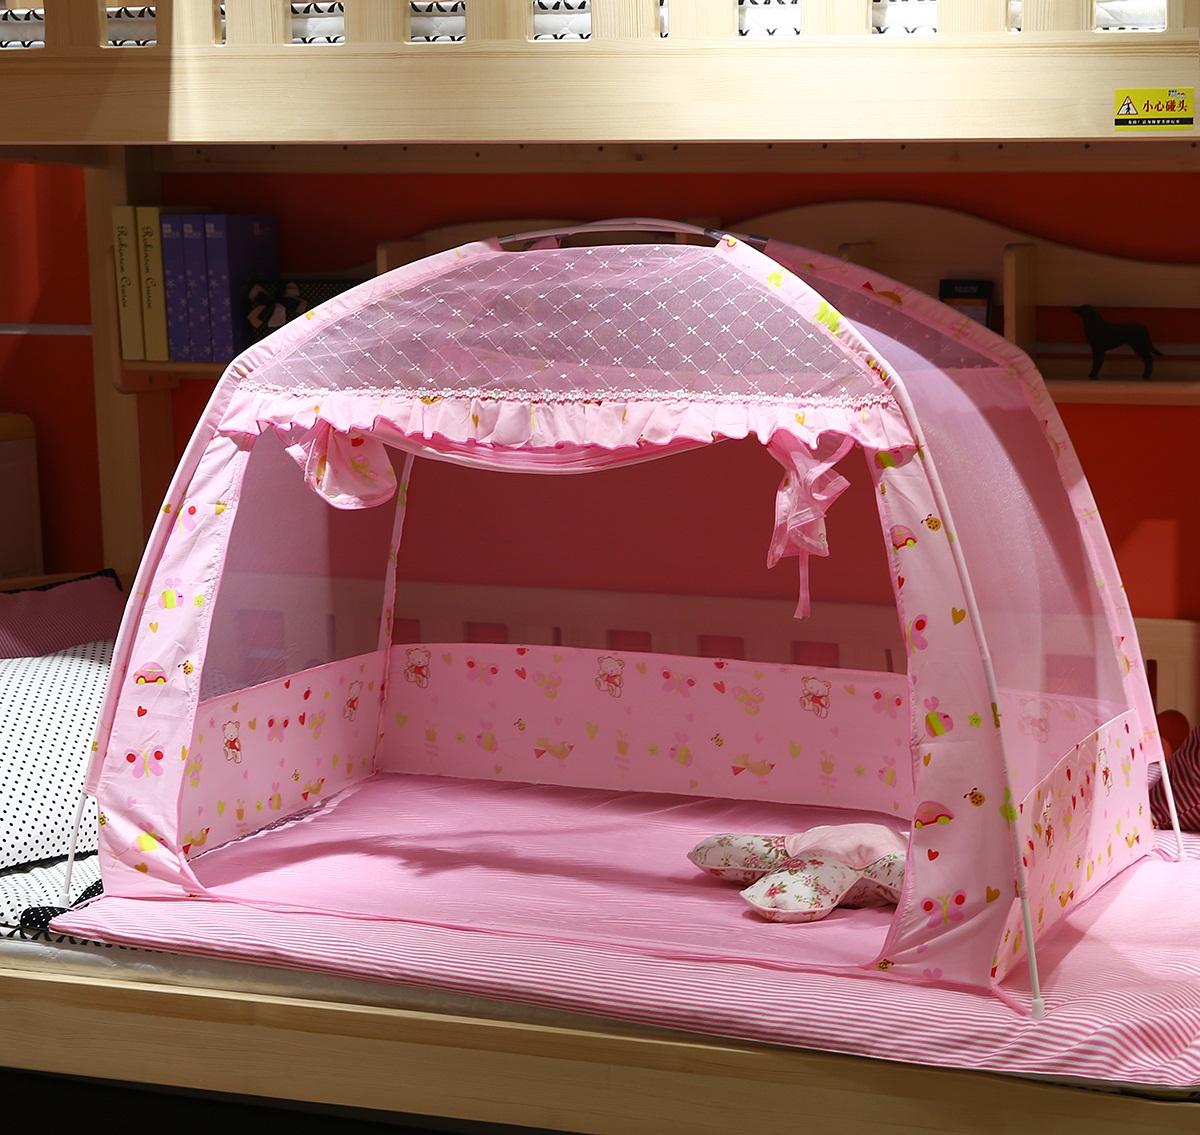 มุ้งกันยุงเตียงเด็กทารก Petpet ป้องกันมุ้งปกเด็กบัญชีกระโจมวงเล็บโรงเรียนอนุบาลด้านล่างกันกระแทกบัญชี